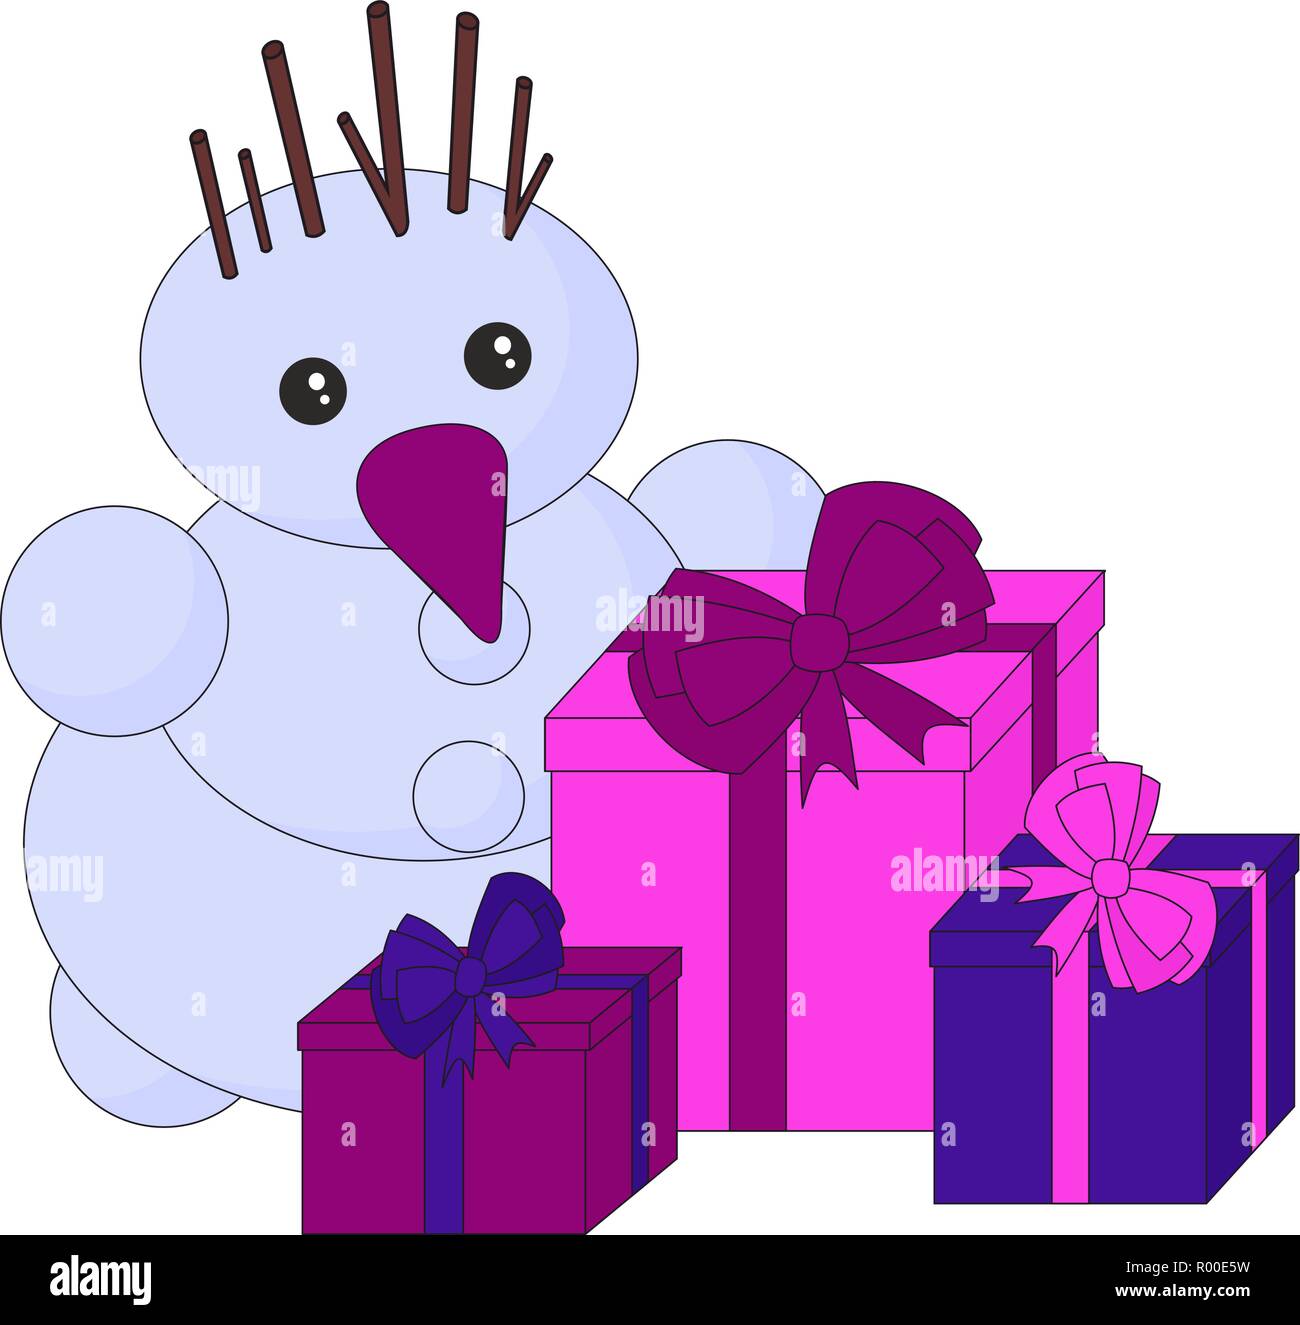 Schneemann und Geschenke auf weißem Hintergrund. Weihnachtsfeiertag. Winterurlaub cartoon nette Karte, Frohe Weihnachten Karte. Stock Vektor